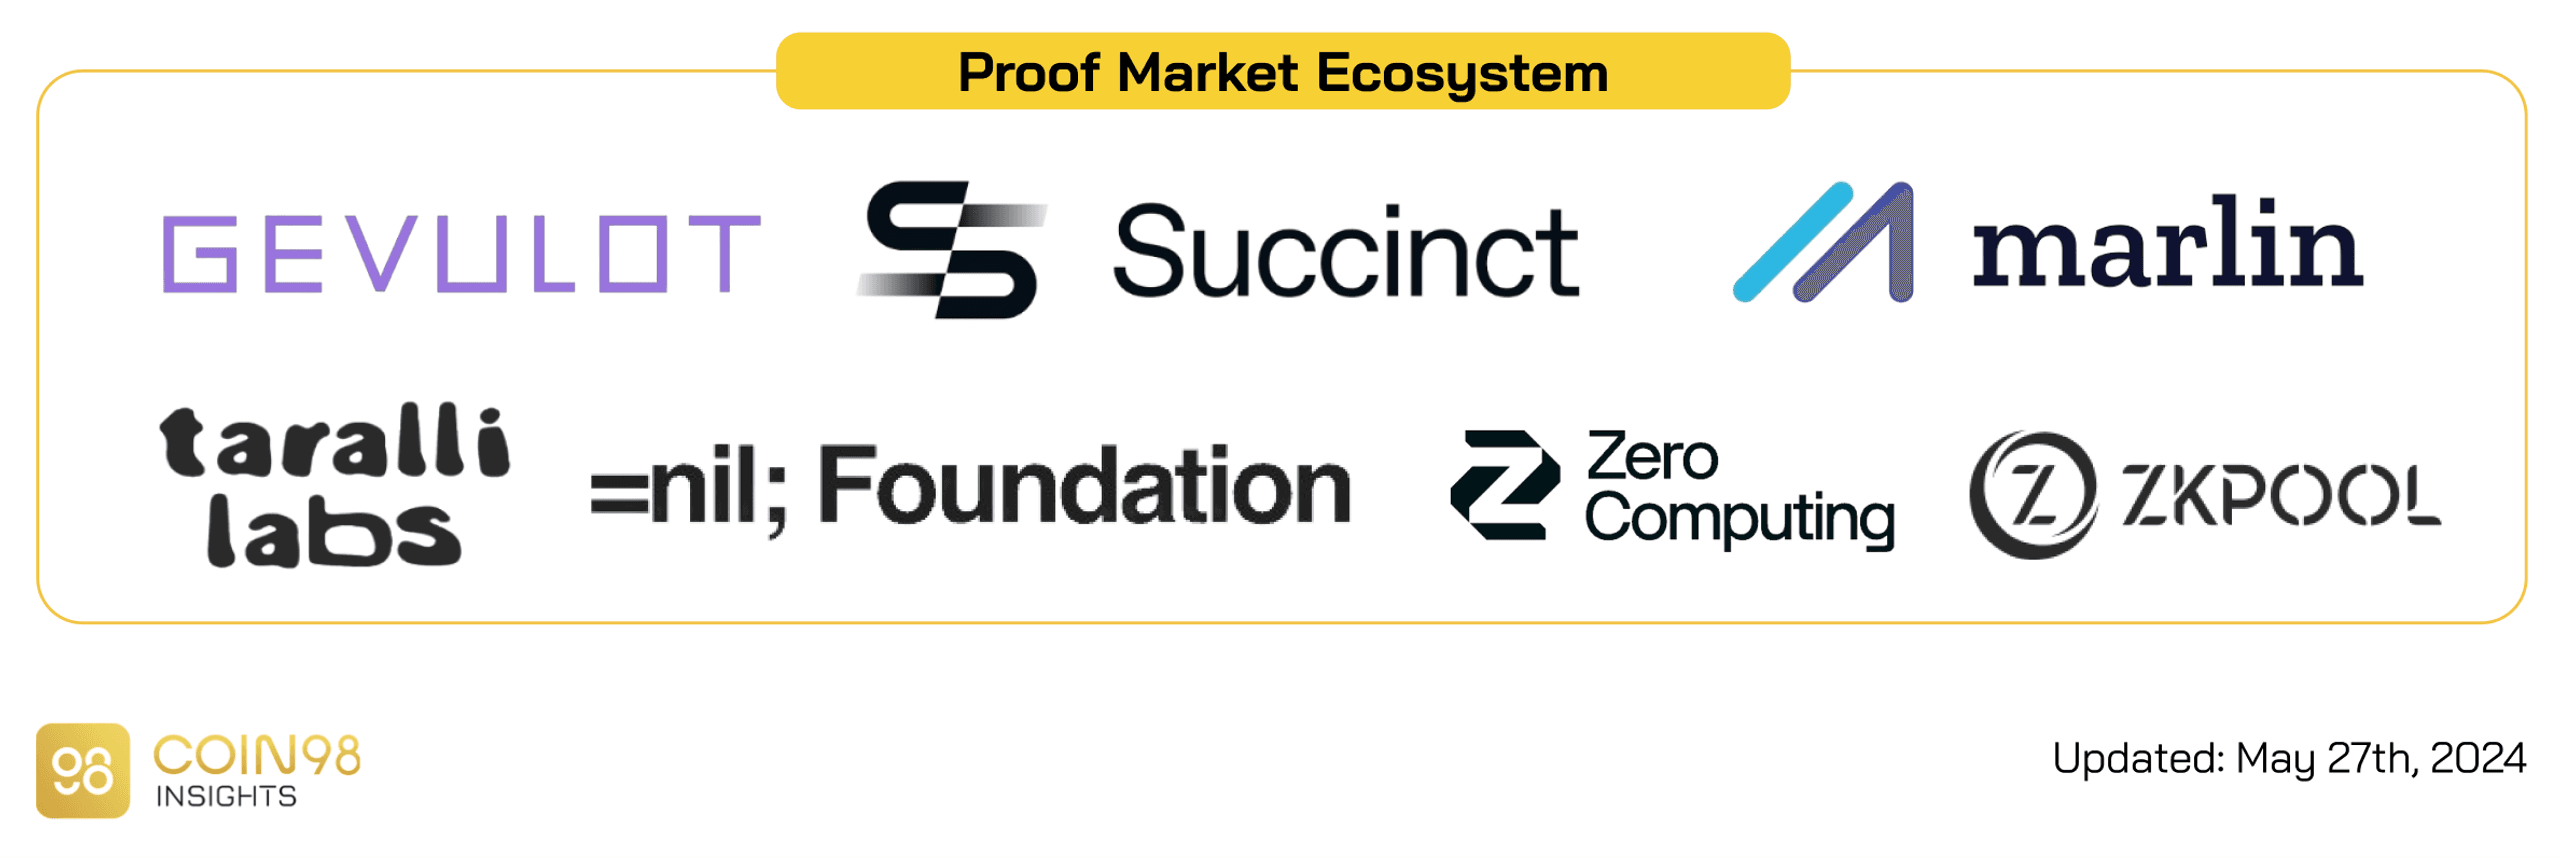 hệ sinh thái proof market